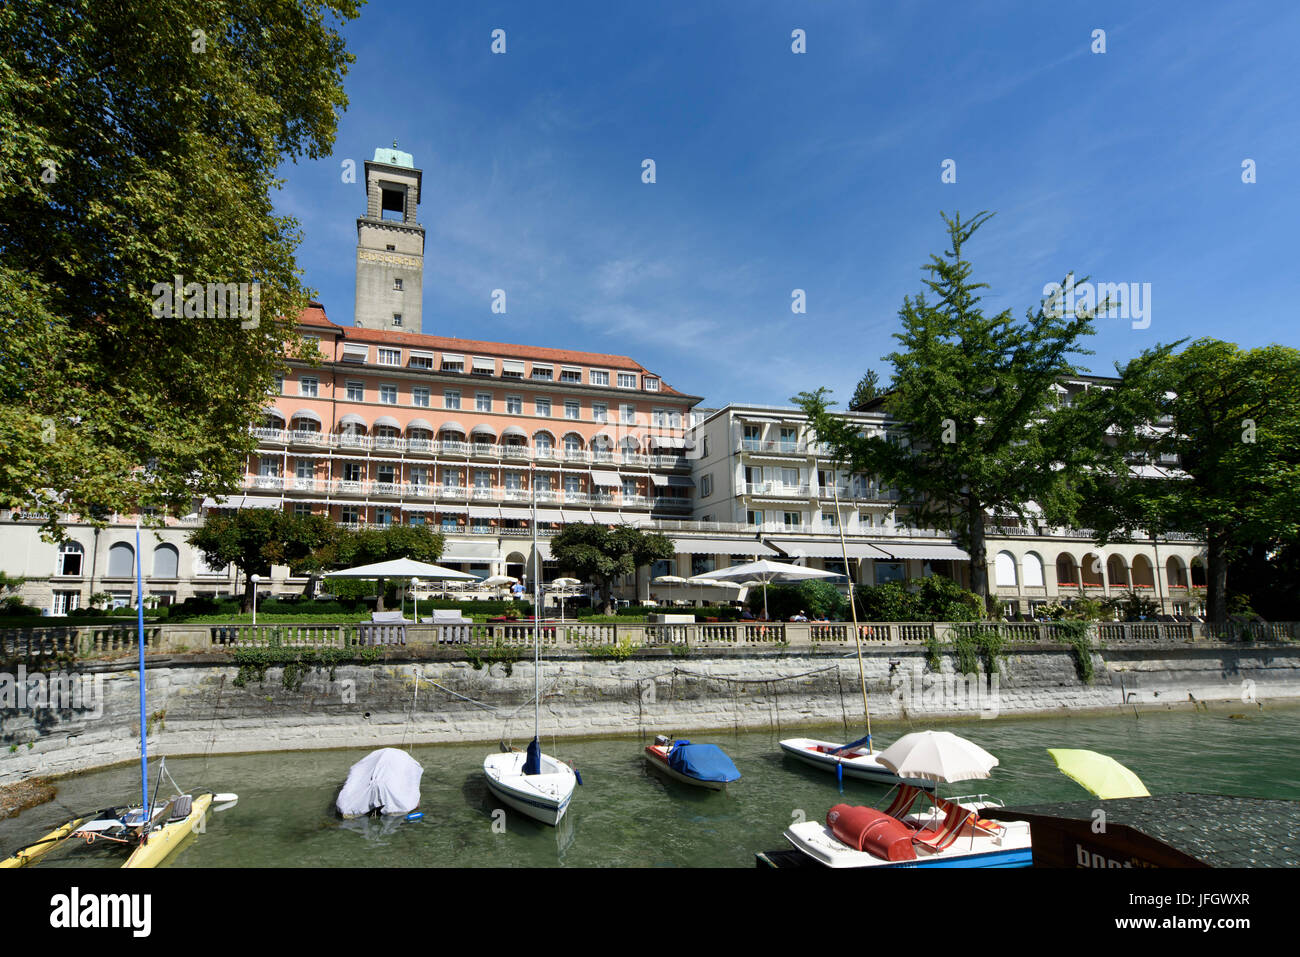 Hotel Bad Schachen, Lindau, Lago de Constanza, bávaros, Alemania Foto de stock